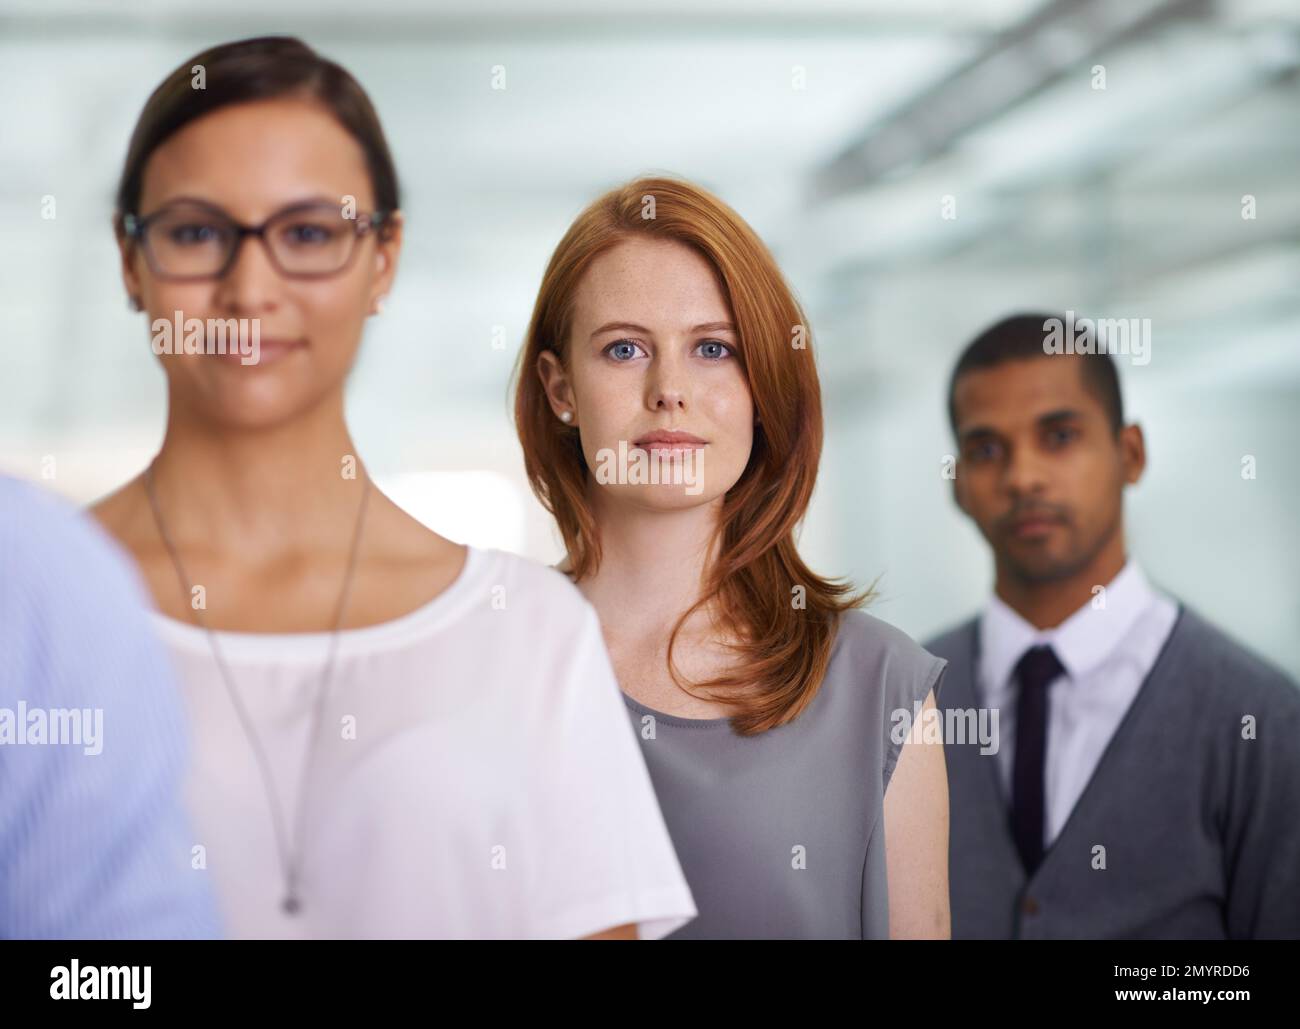 Gemeinsam können wir mehr erreichen. Porträt einer jungen Geschäftsfrau, die unter ihren Kollegen in einem Büro steht. Stockfoto